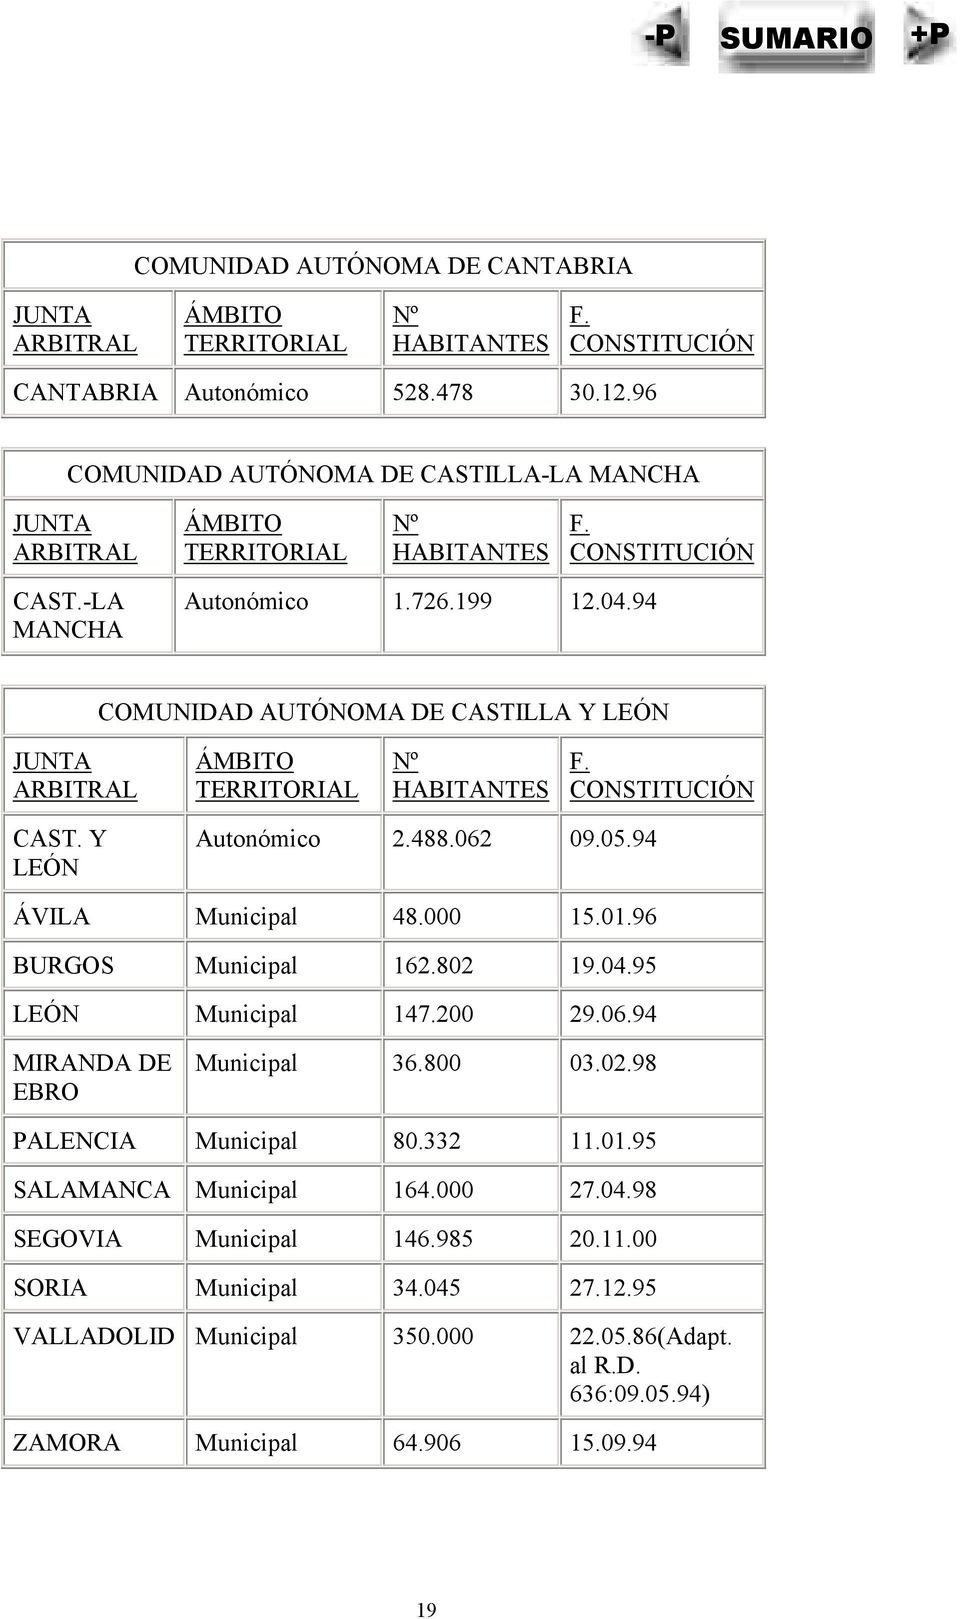 94 COMUNIDAD AUTÓNOMA DE CASTILLA Y LEÓN JUNTA ARBITRAL ÁMBITO TERRITORIAL Nº HABITANTES F. CONSTITUCIÓN CAST. Y LEÓN Autonómico 2.488.062 09.05.94 ÁVILA Municipal 48.000 15.01.